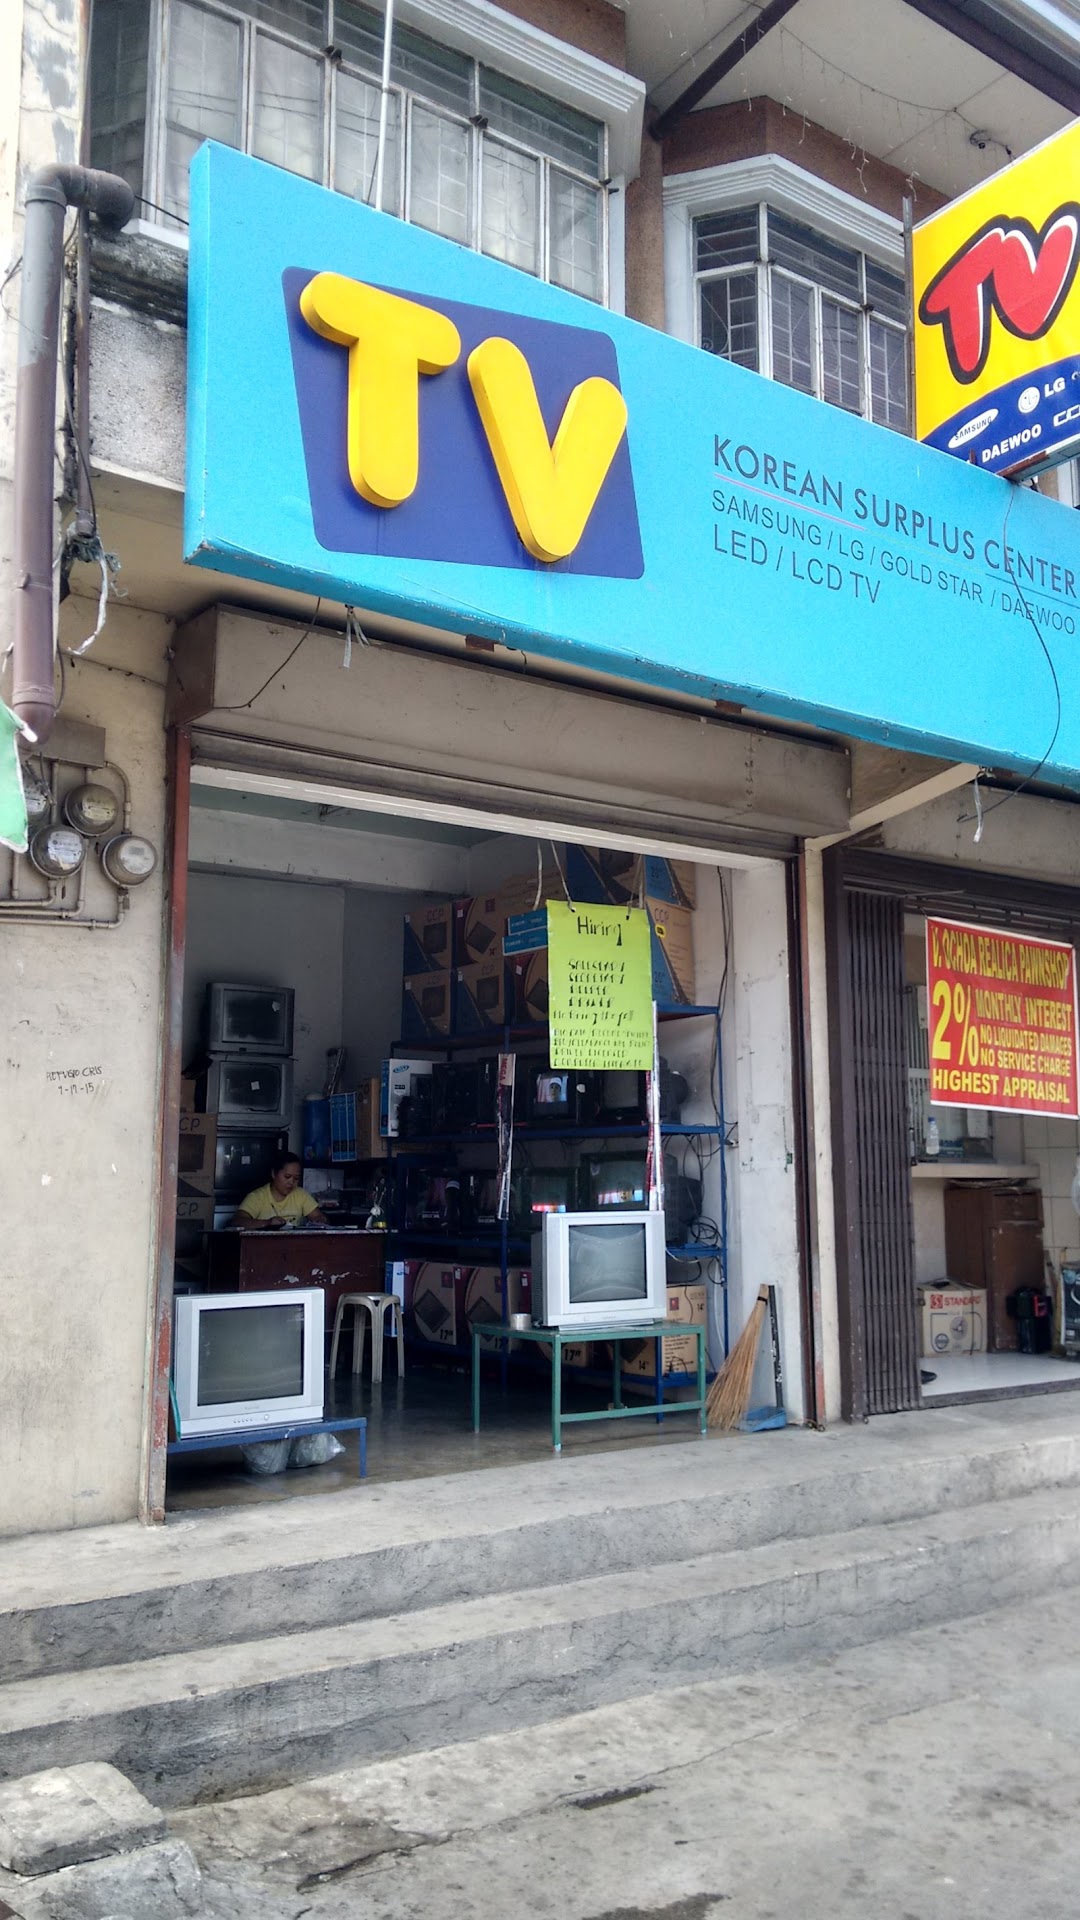 Tv Korean Surplus Center